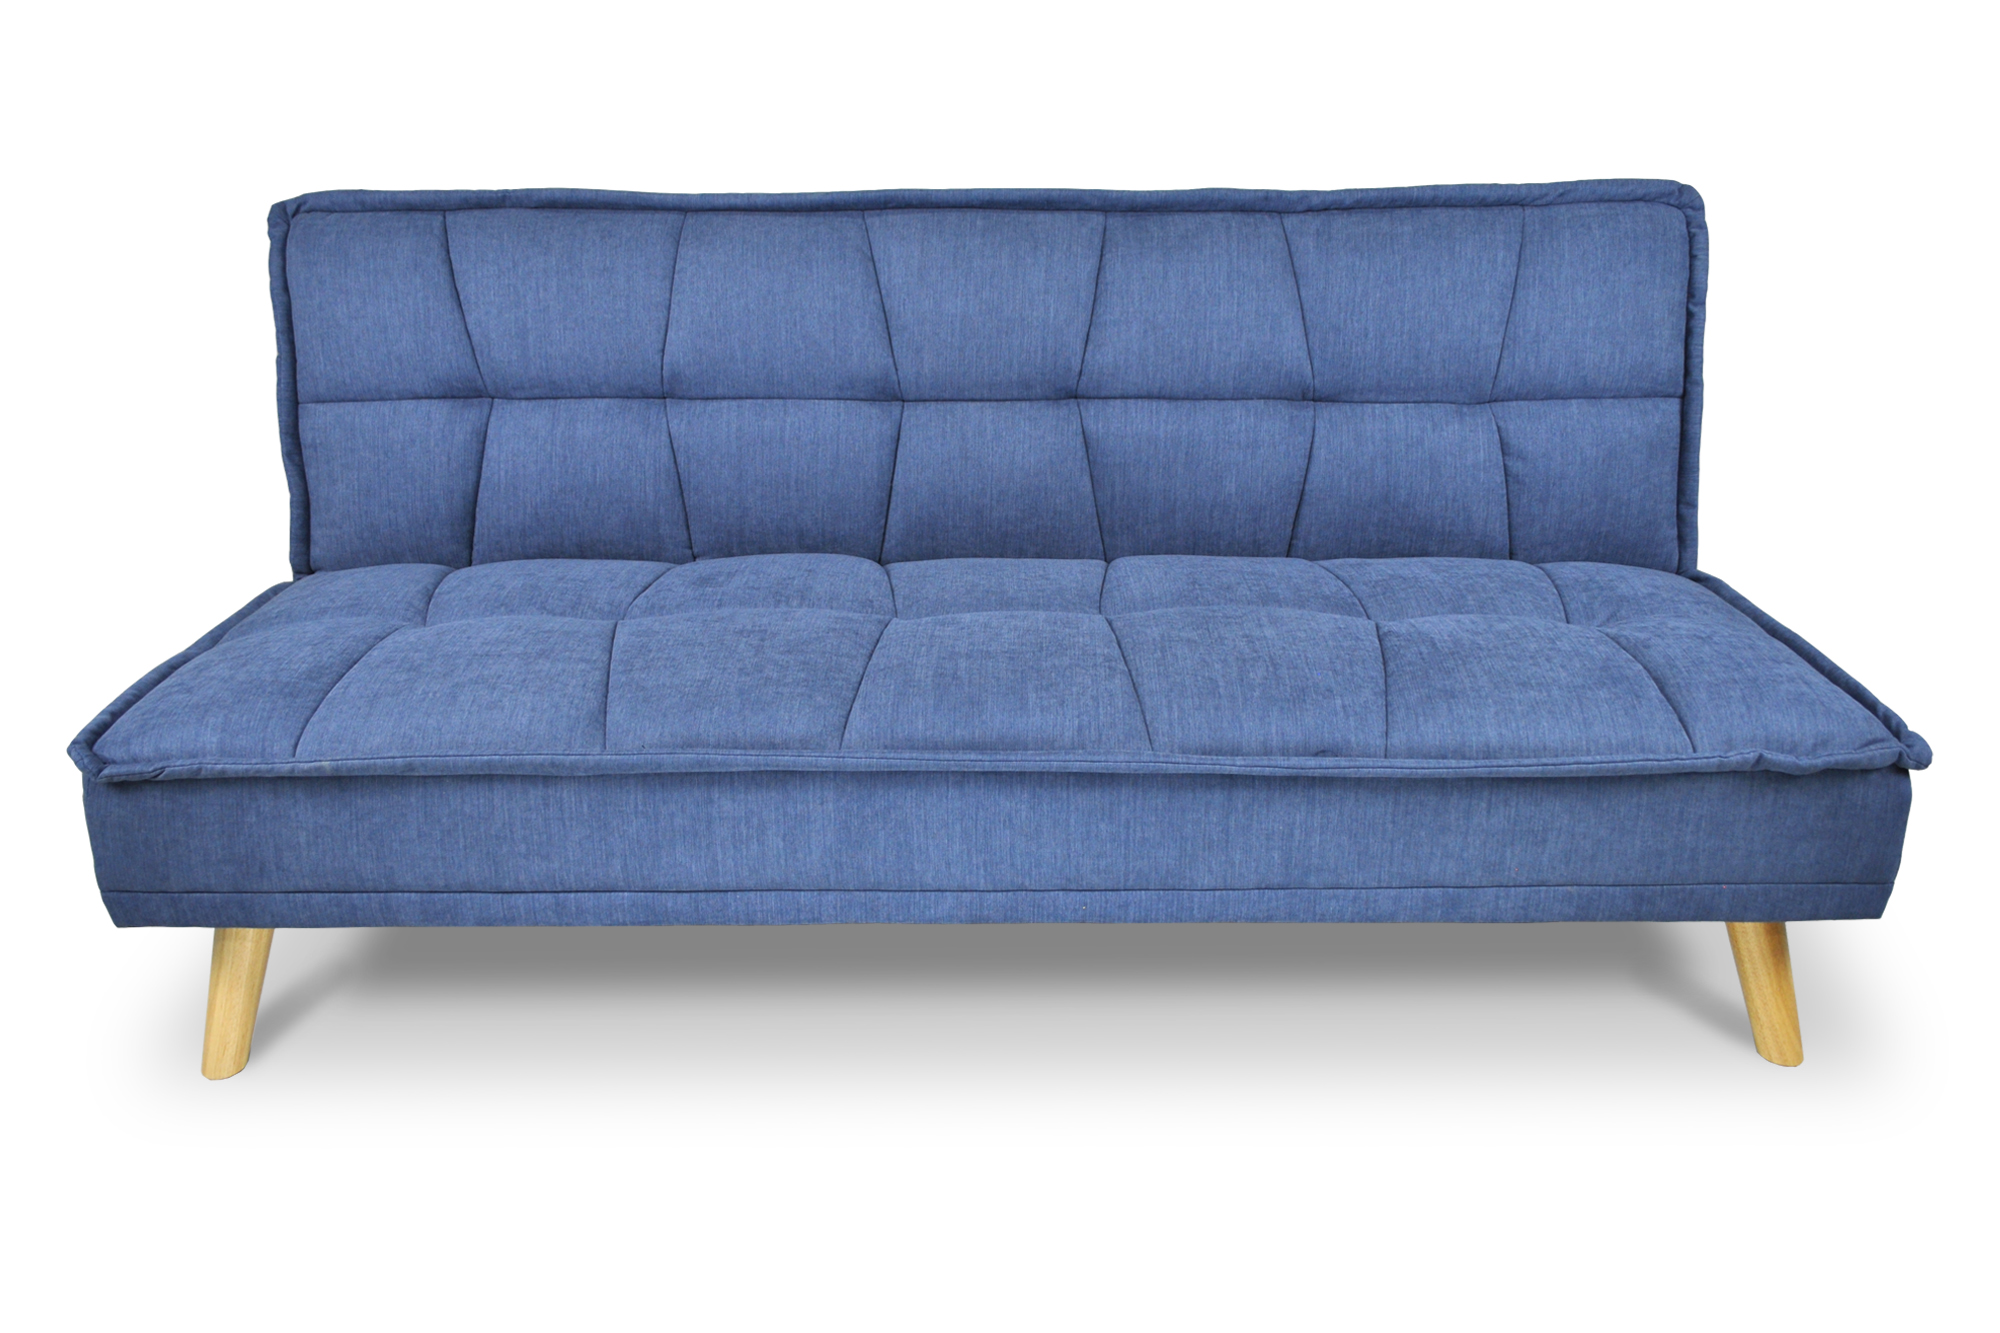 Divano letto clic clac in tessuto vellutato blu, divano 3 posti